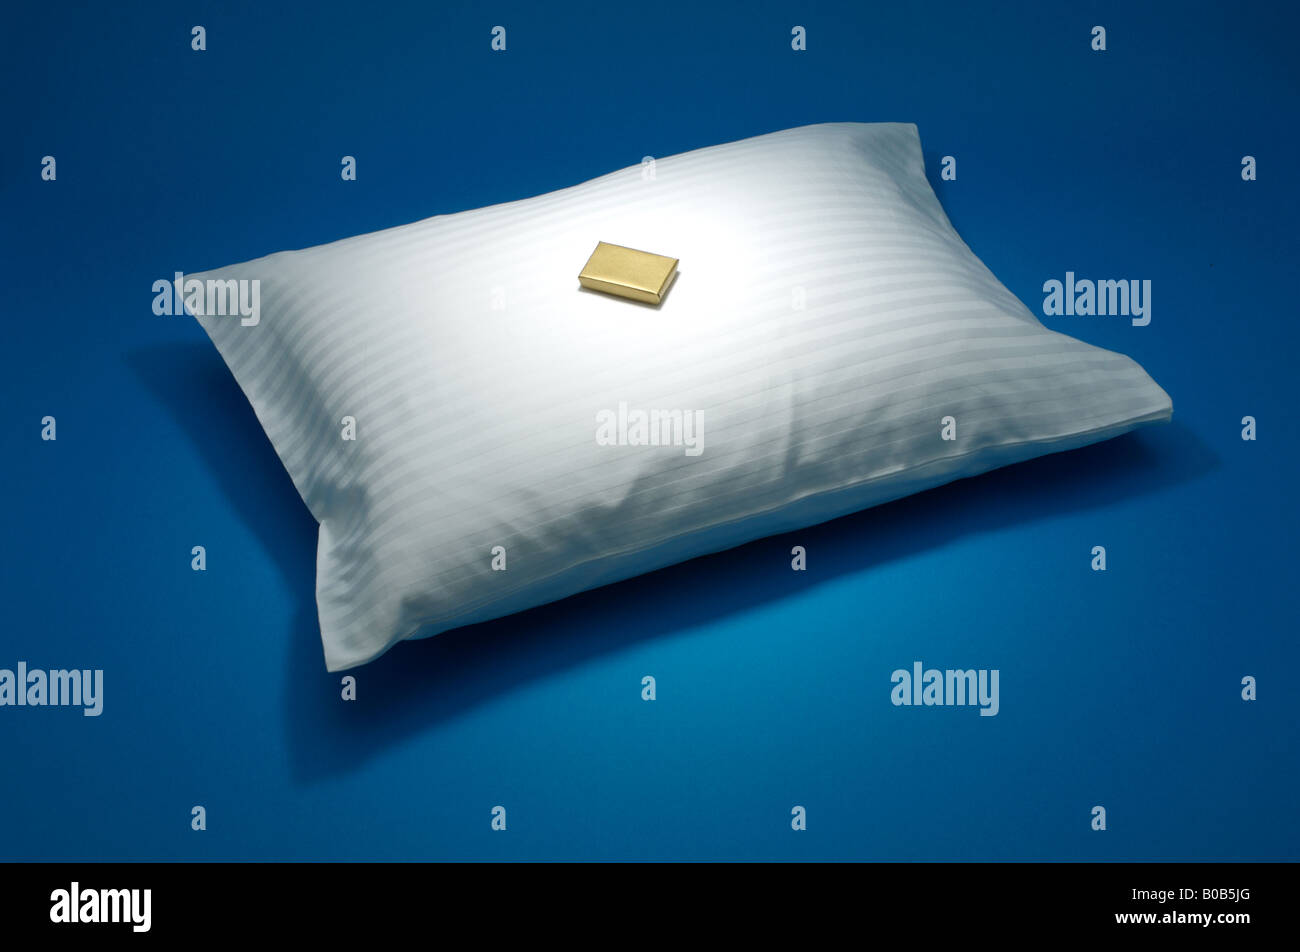 Un oreiller blanc avec une petite boîte en or, sur fond bleu Banque D'Images